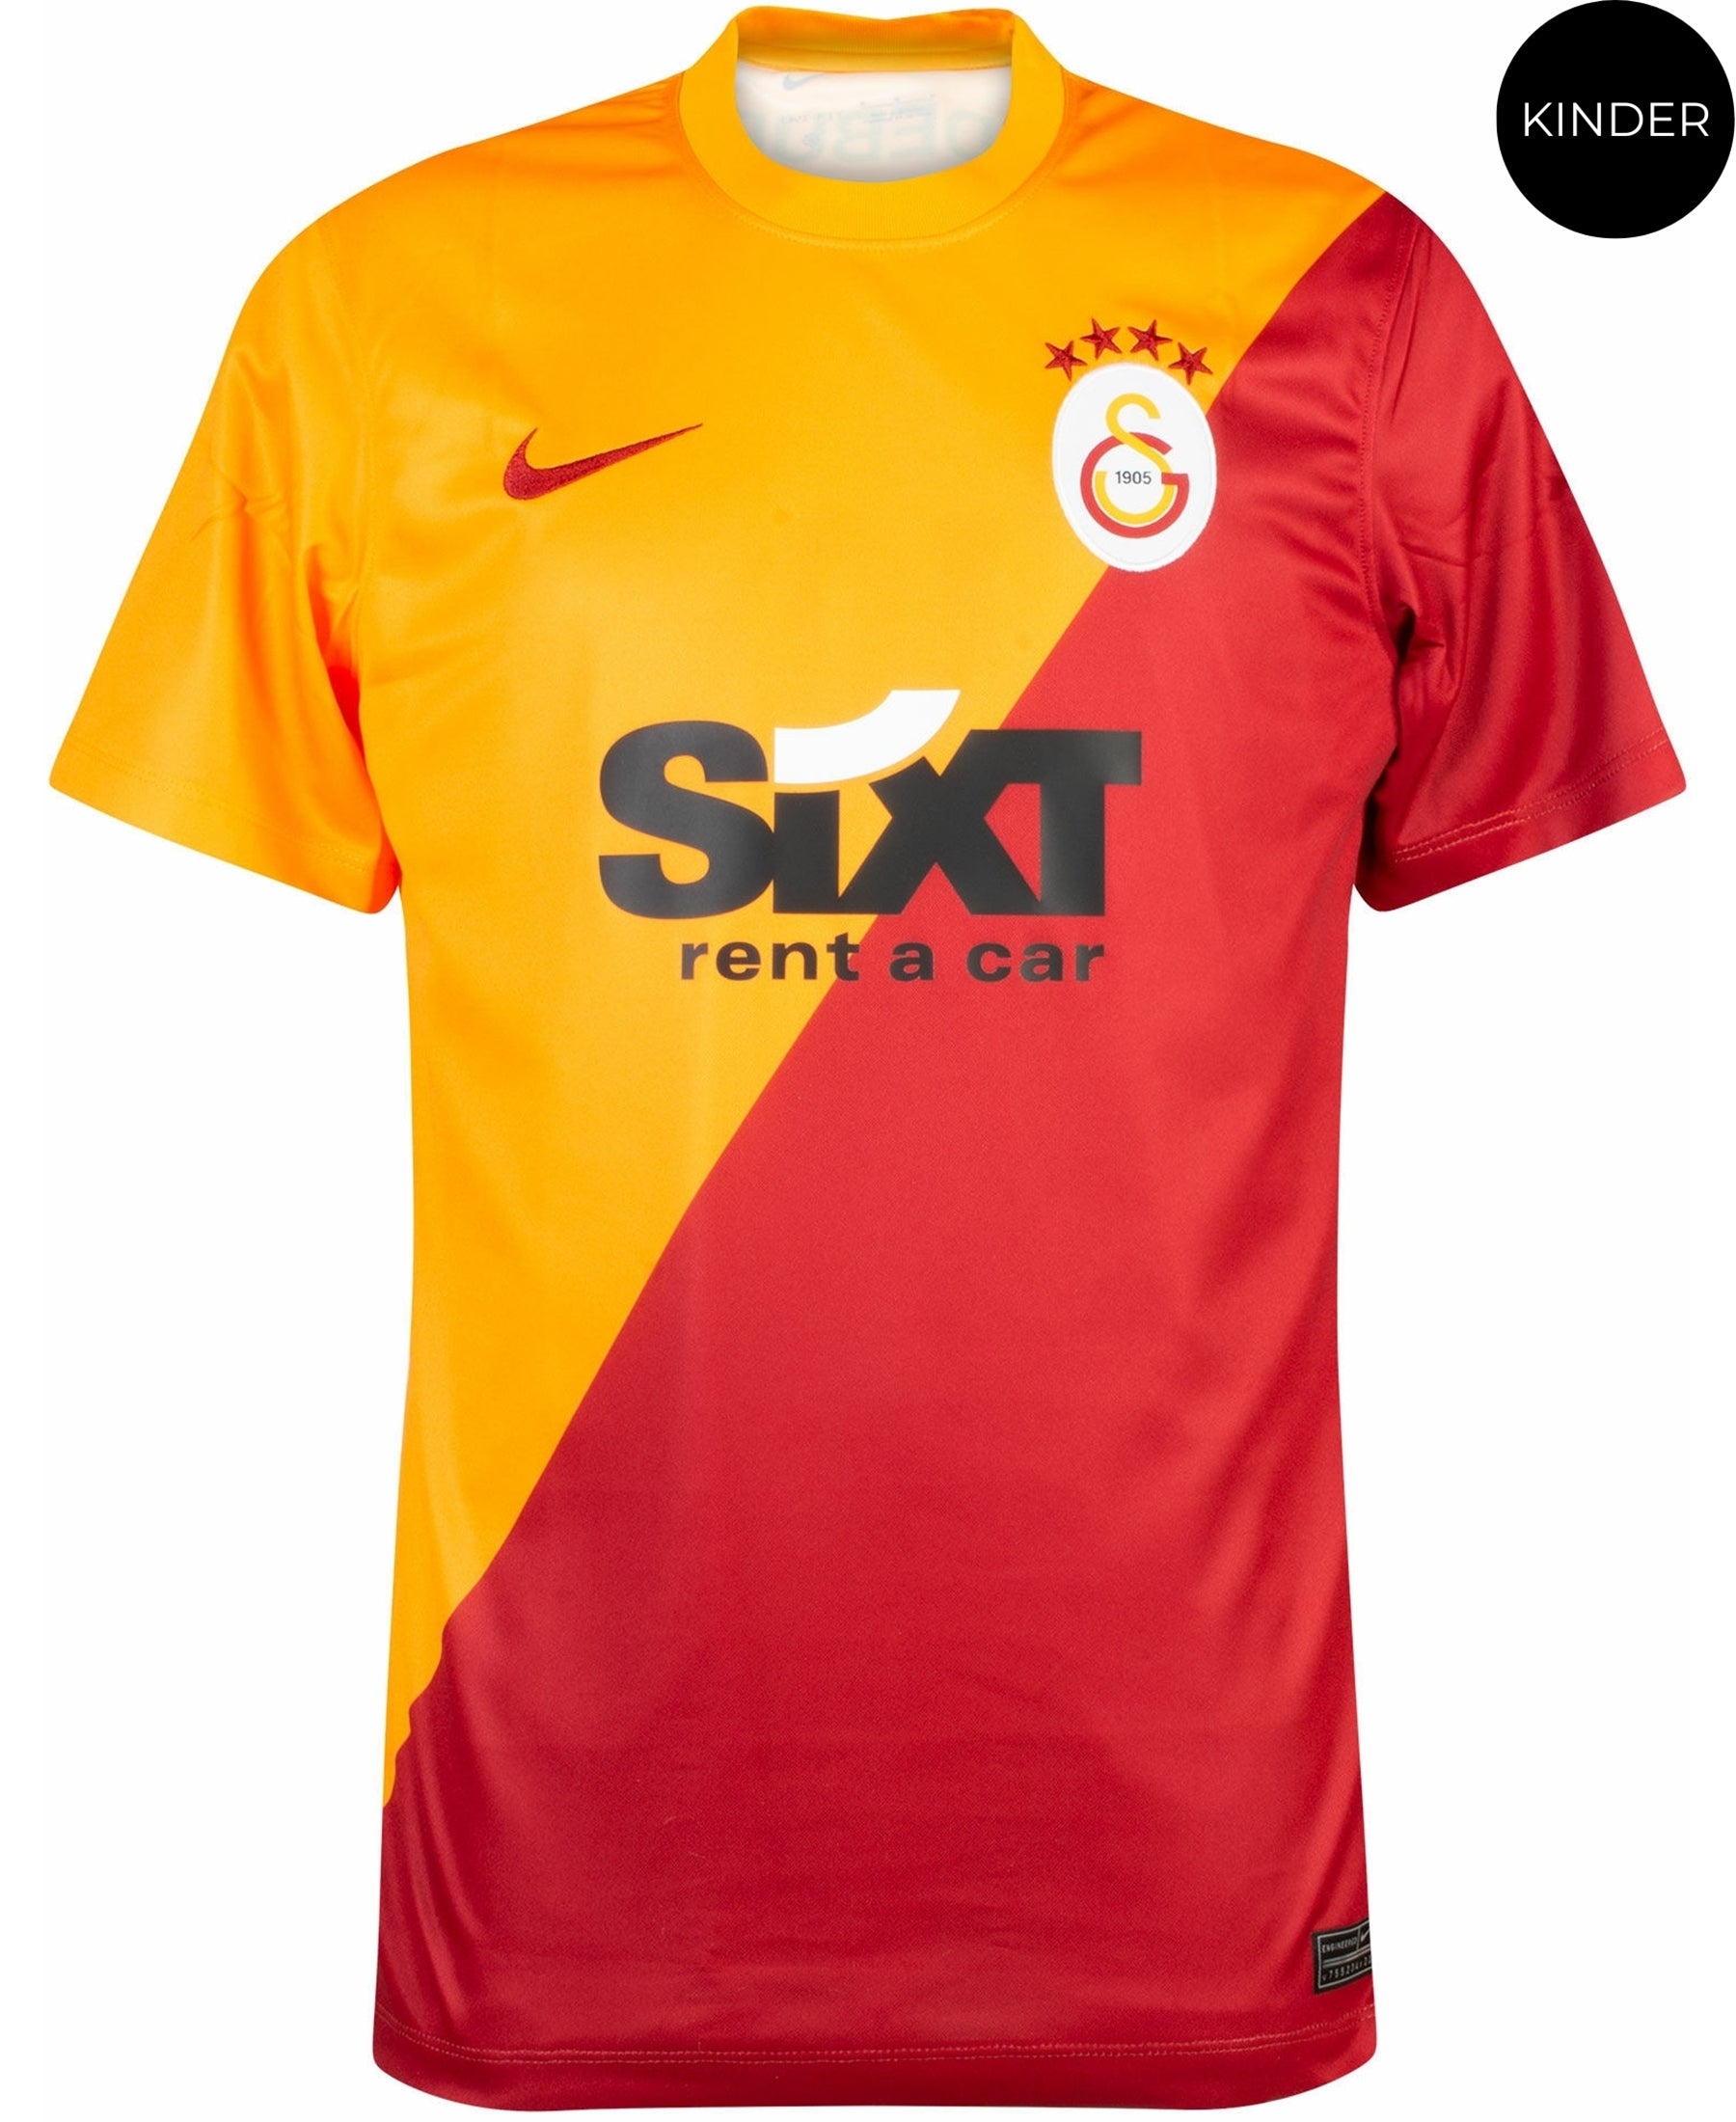 Fußball-Fanartikel Clubs Galatasaray Istanbul online kaufen